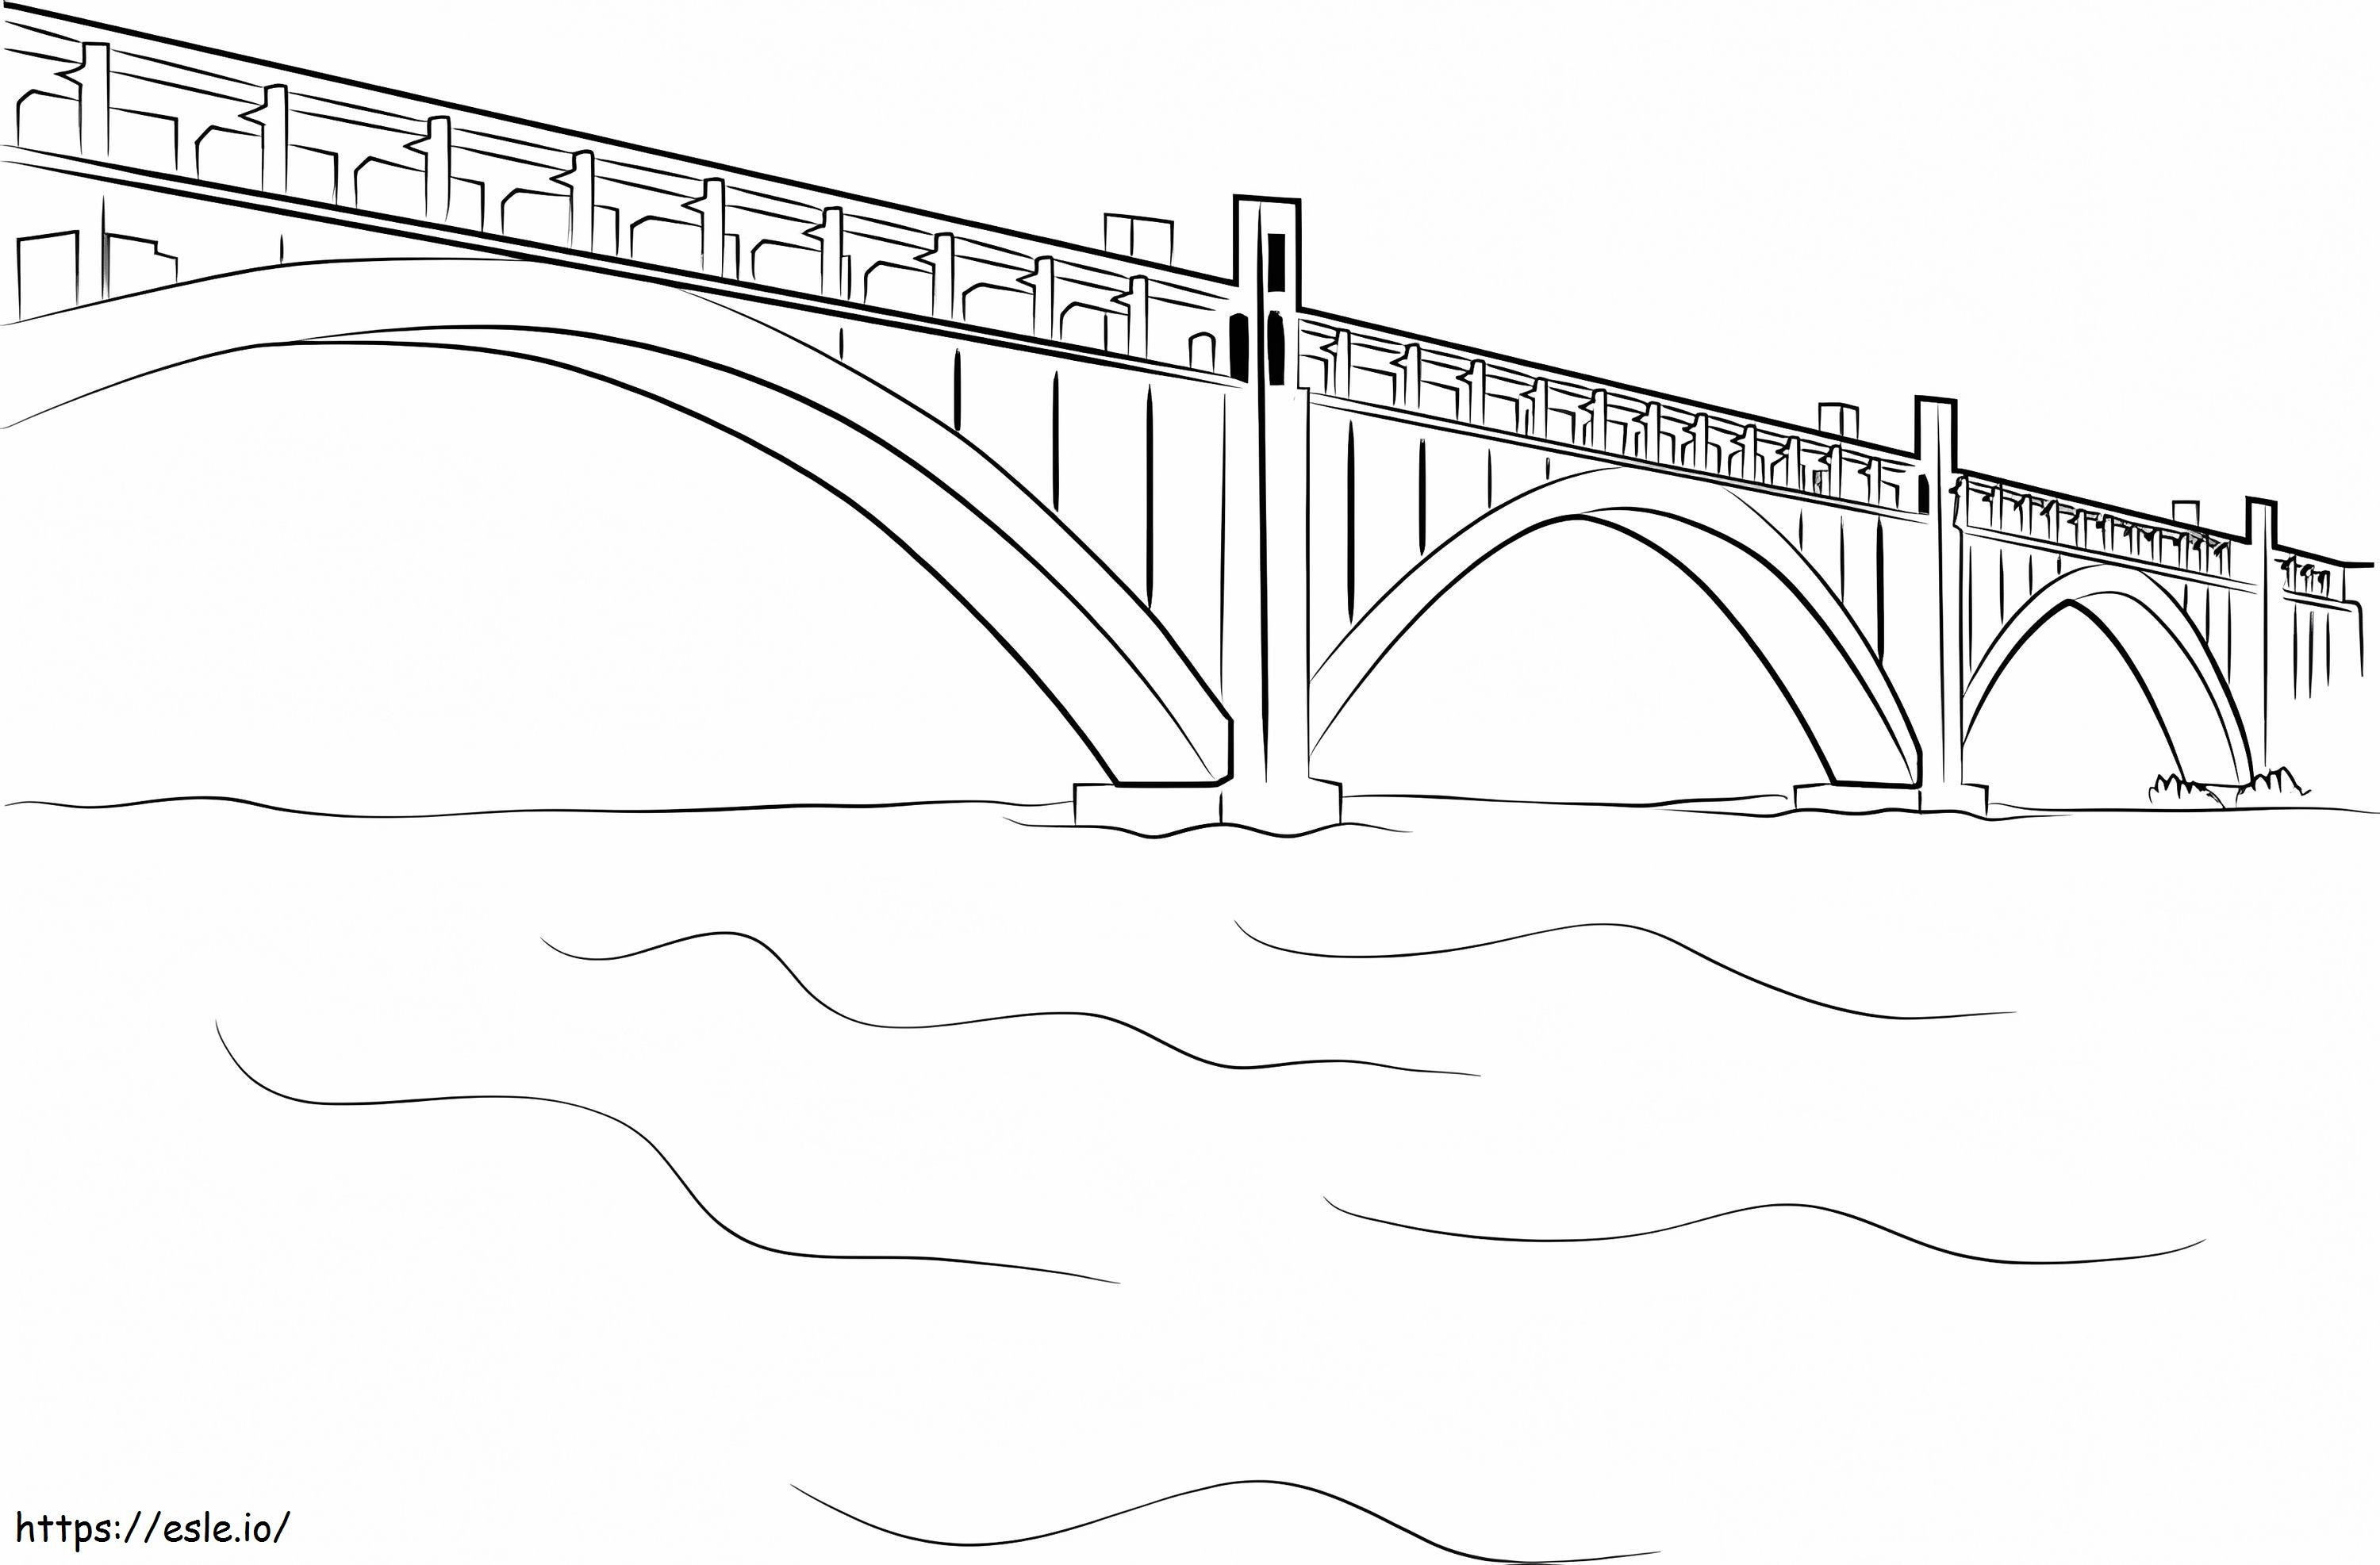 Big Bridge coloring page